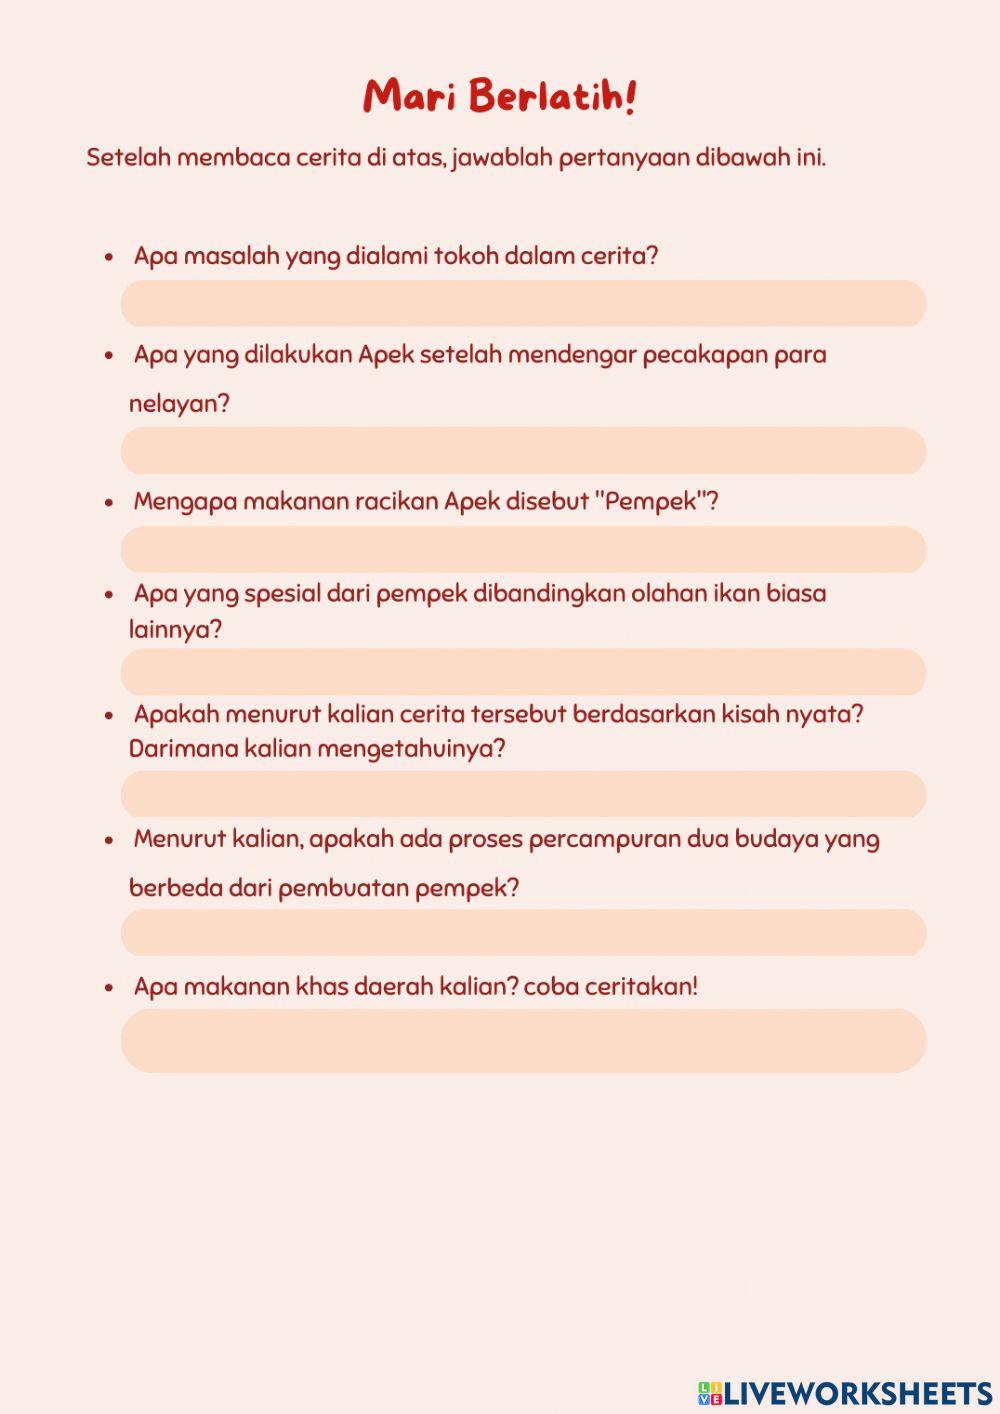 E-lkpd bahasa indonesia